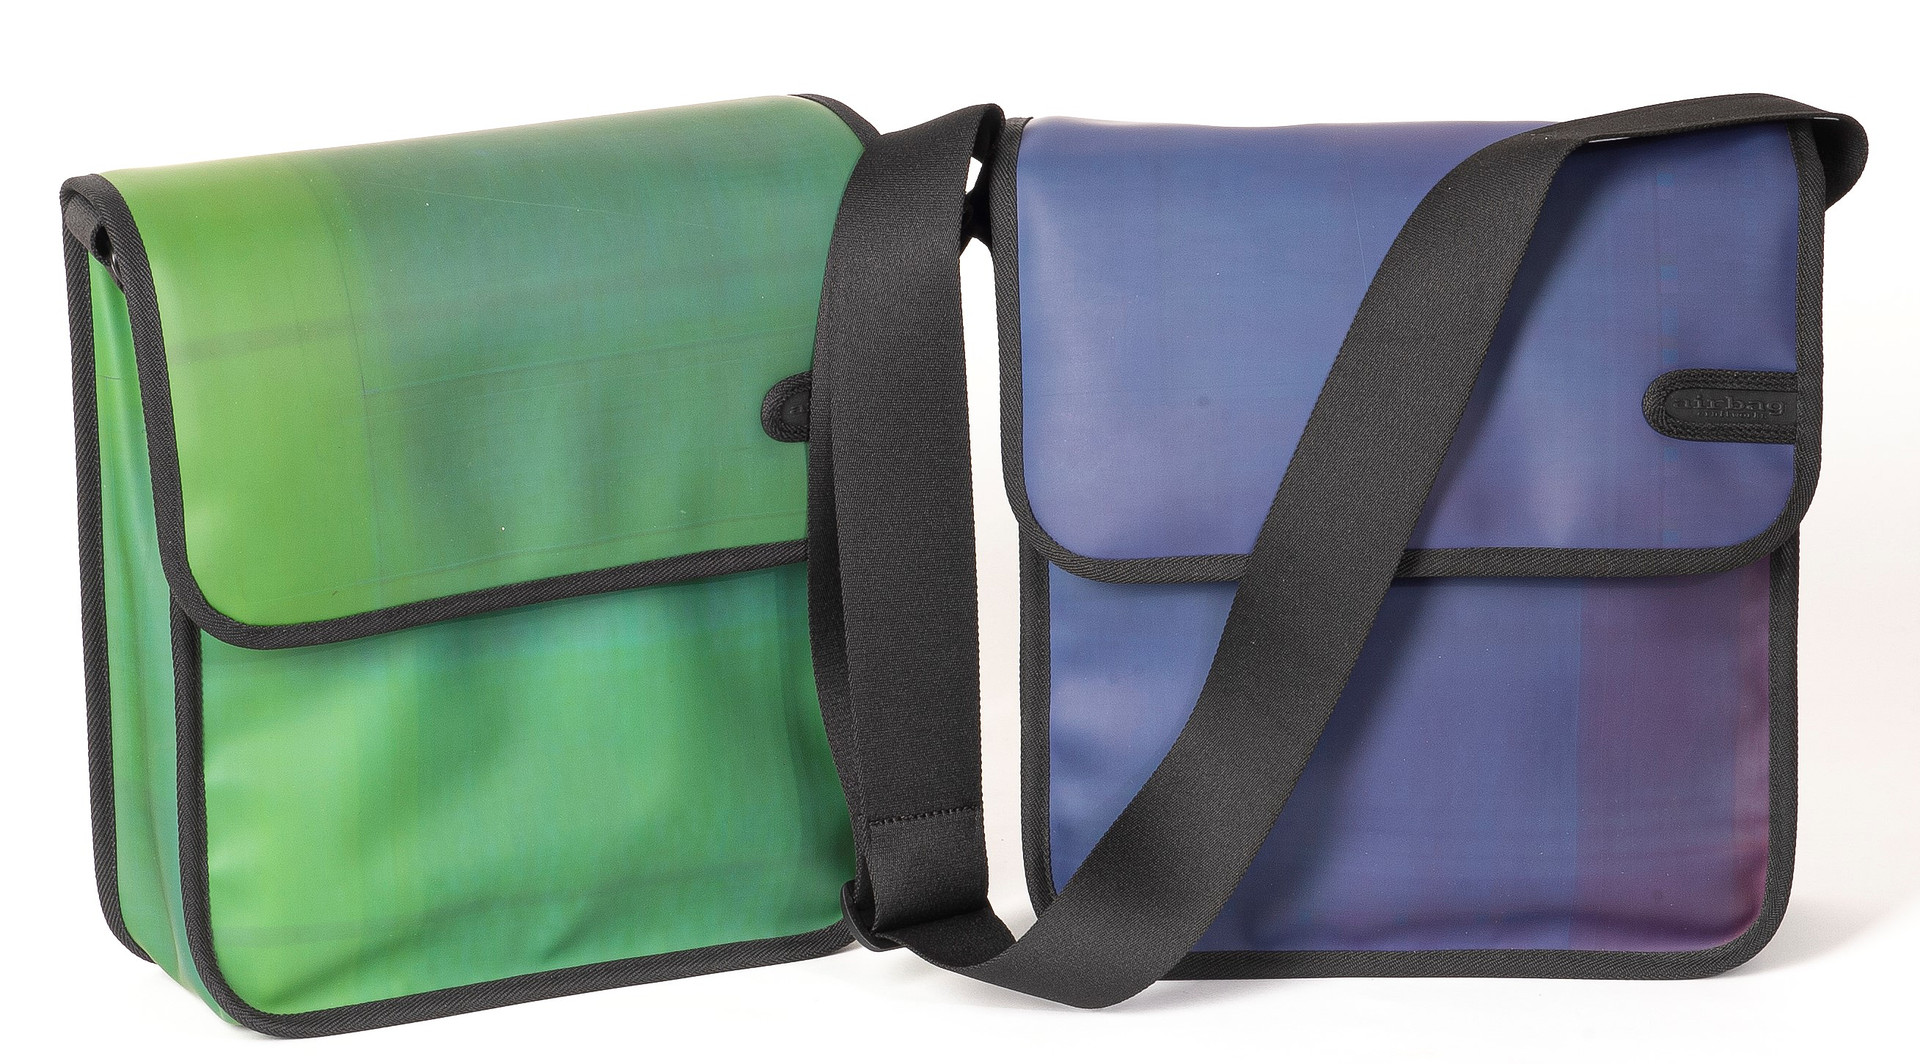 Zwei Taschen: links in hellgrün, rechts in violett-dunkelblau, mit schwarzem Schultergurt 